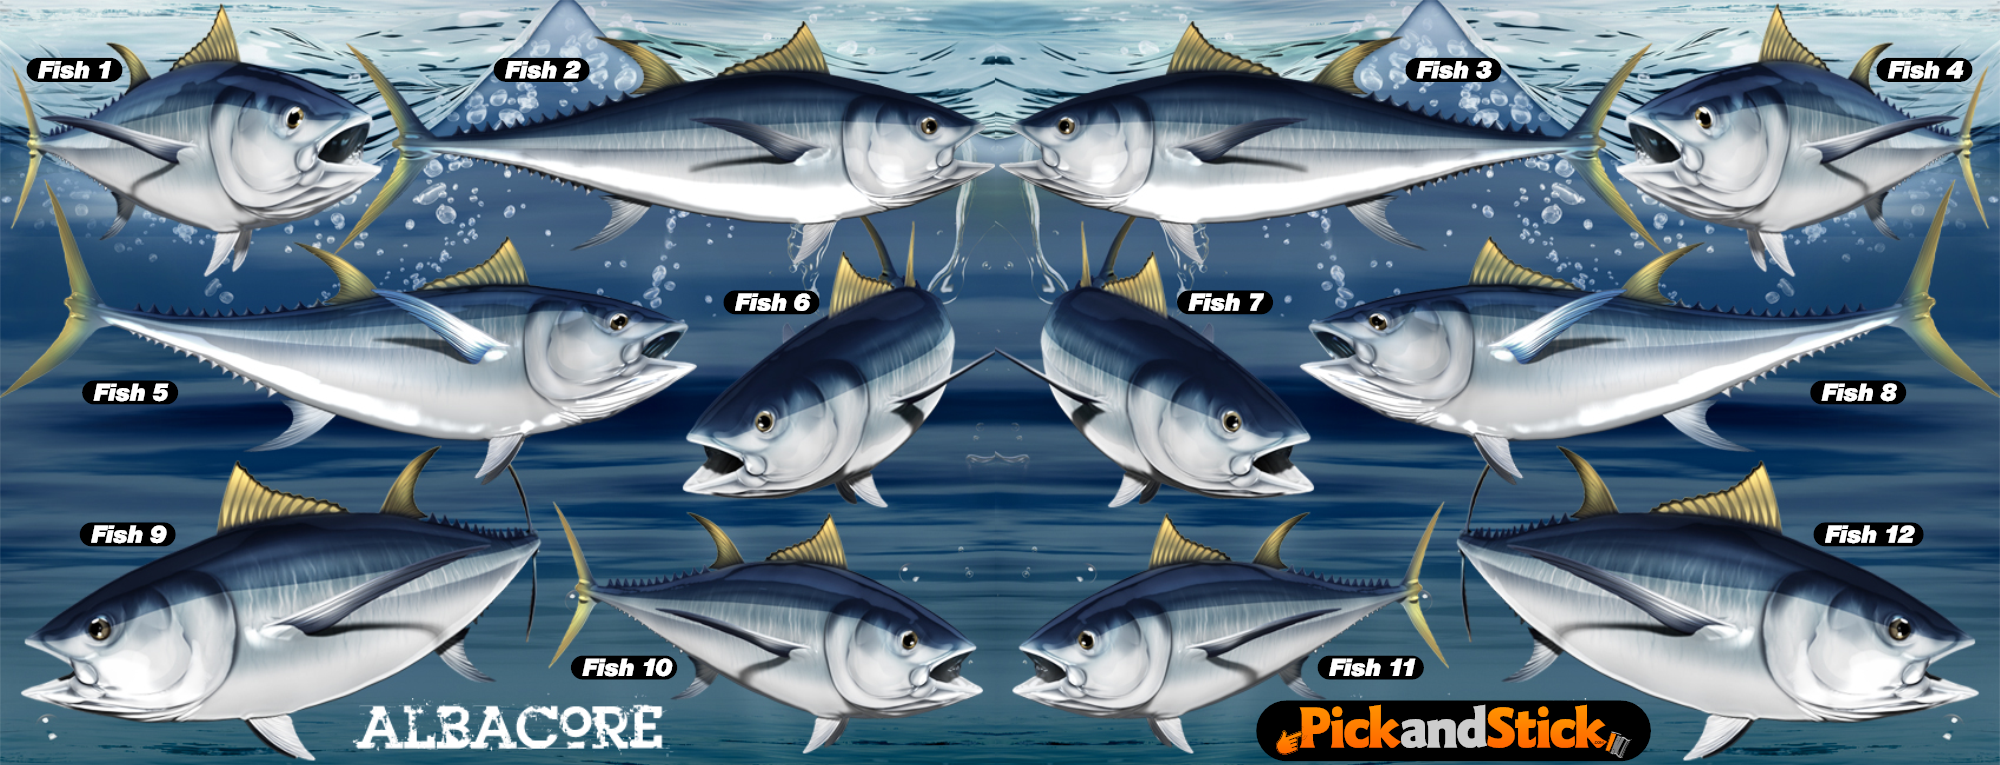 Albacore Fish Decals - PickandStickcom